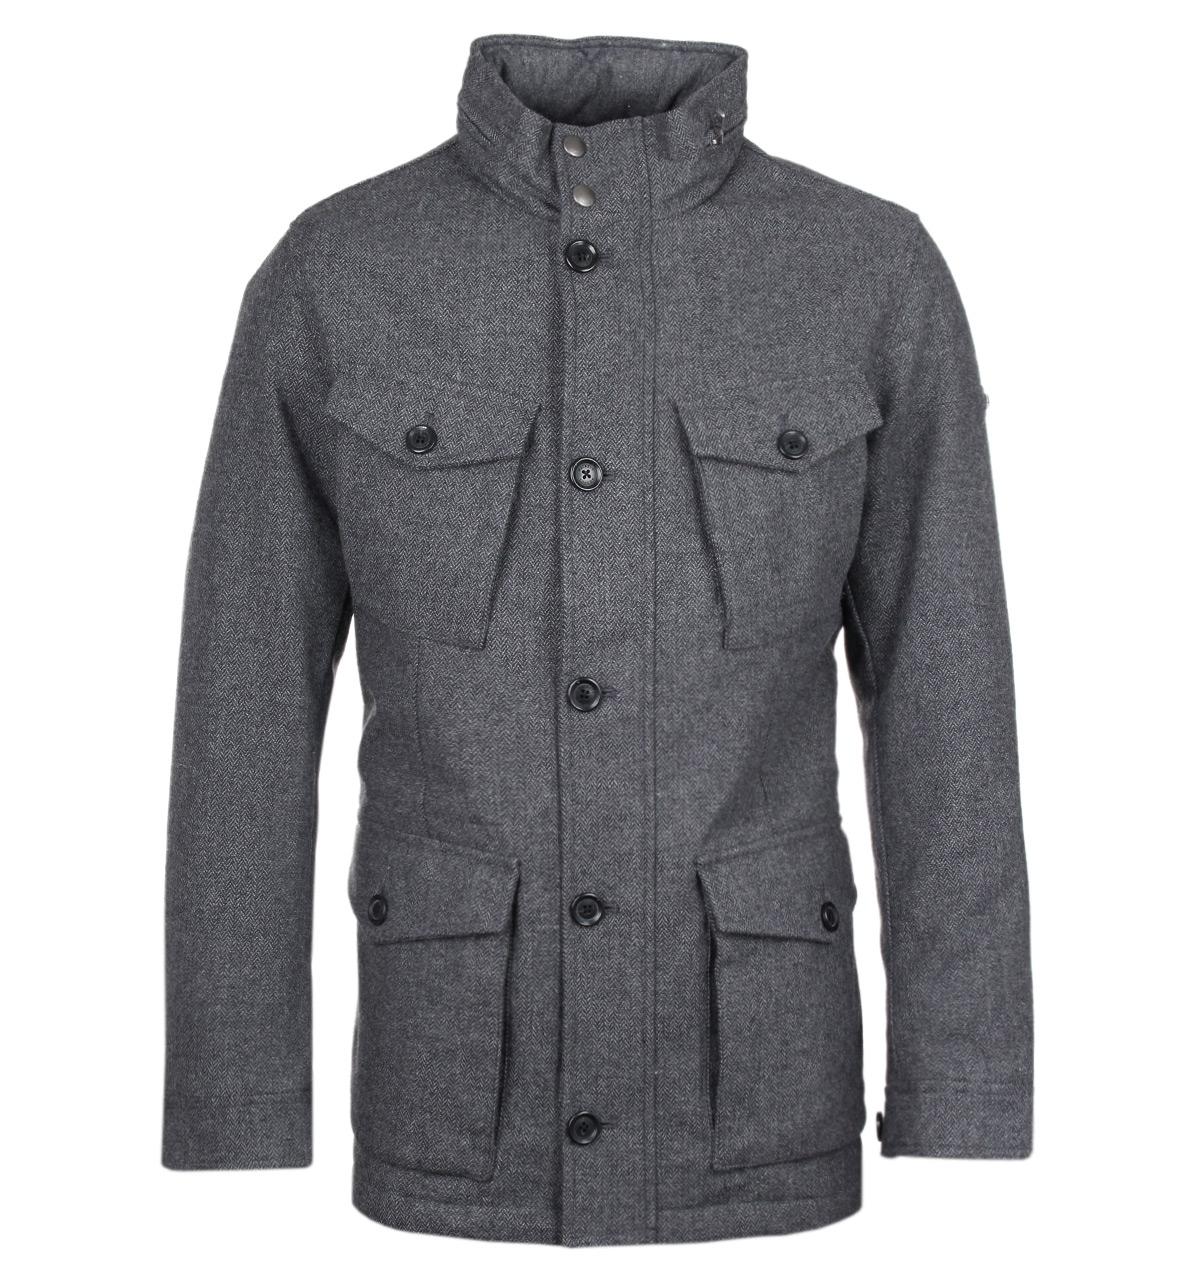 Lyst - Hackett London Herringbone Wool Jacket in Gray for Men